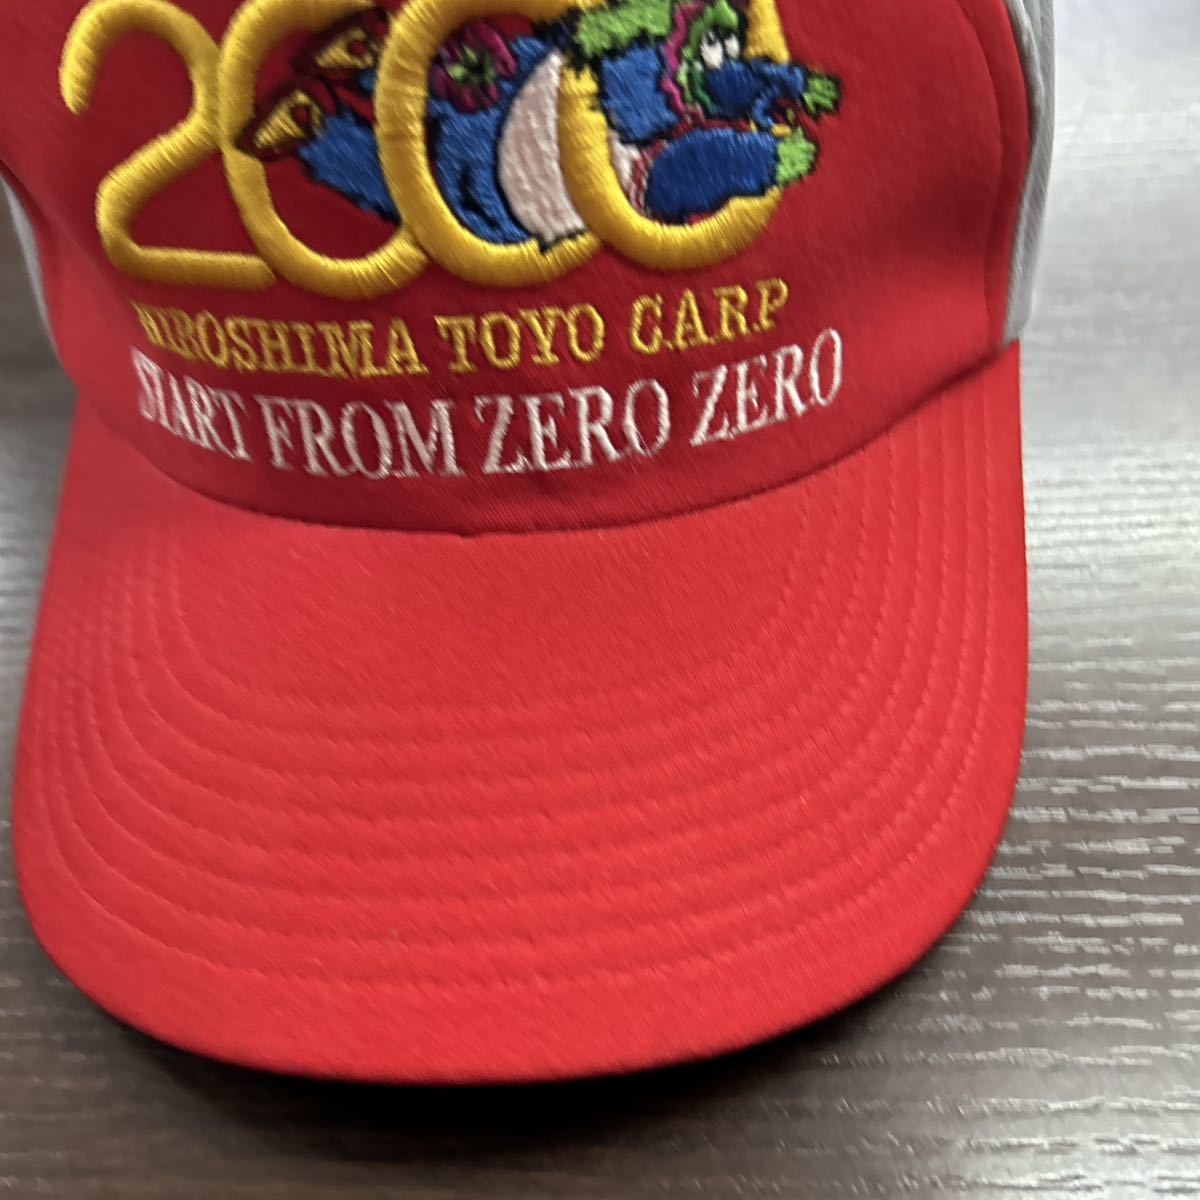 希少 レア 広島東洋カープ 2000年 キャッチ フレーズ キャップ ミズノ製 Mサイズ ミズノ START FROM ZERO ZERO_画像2